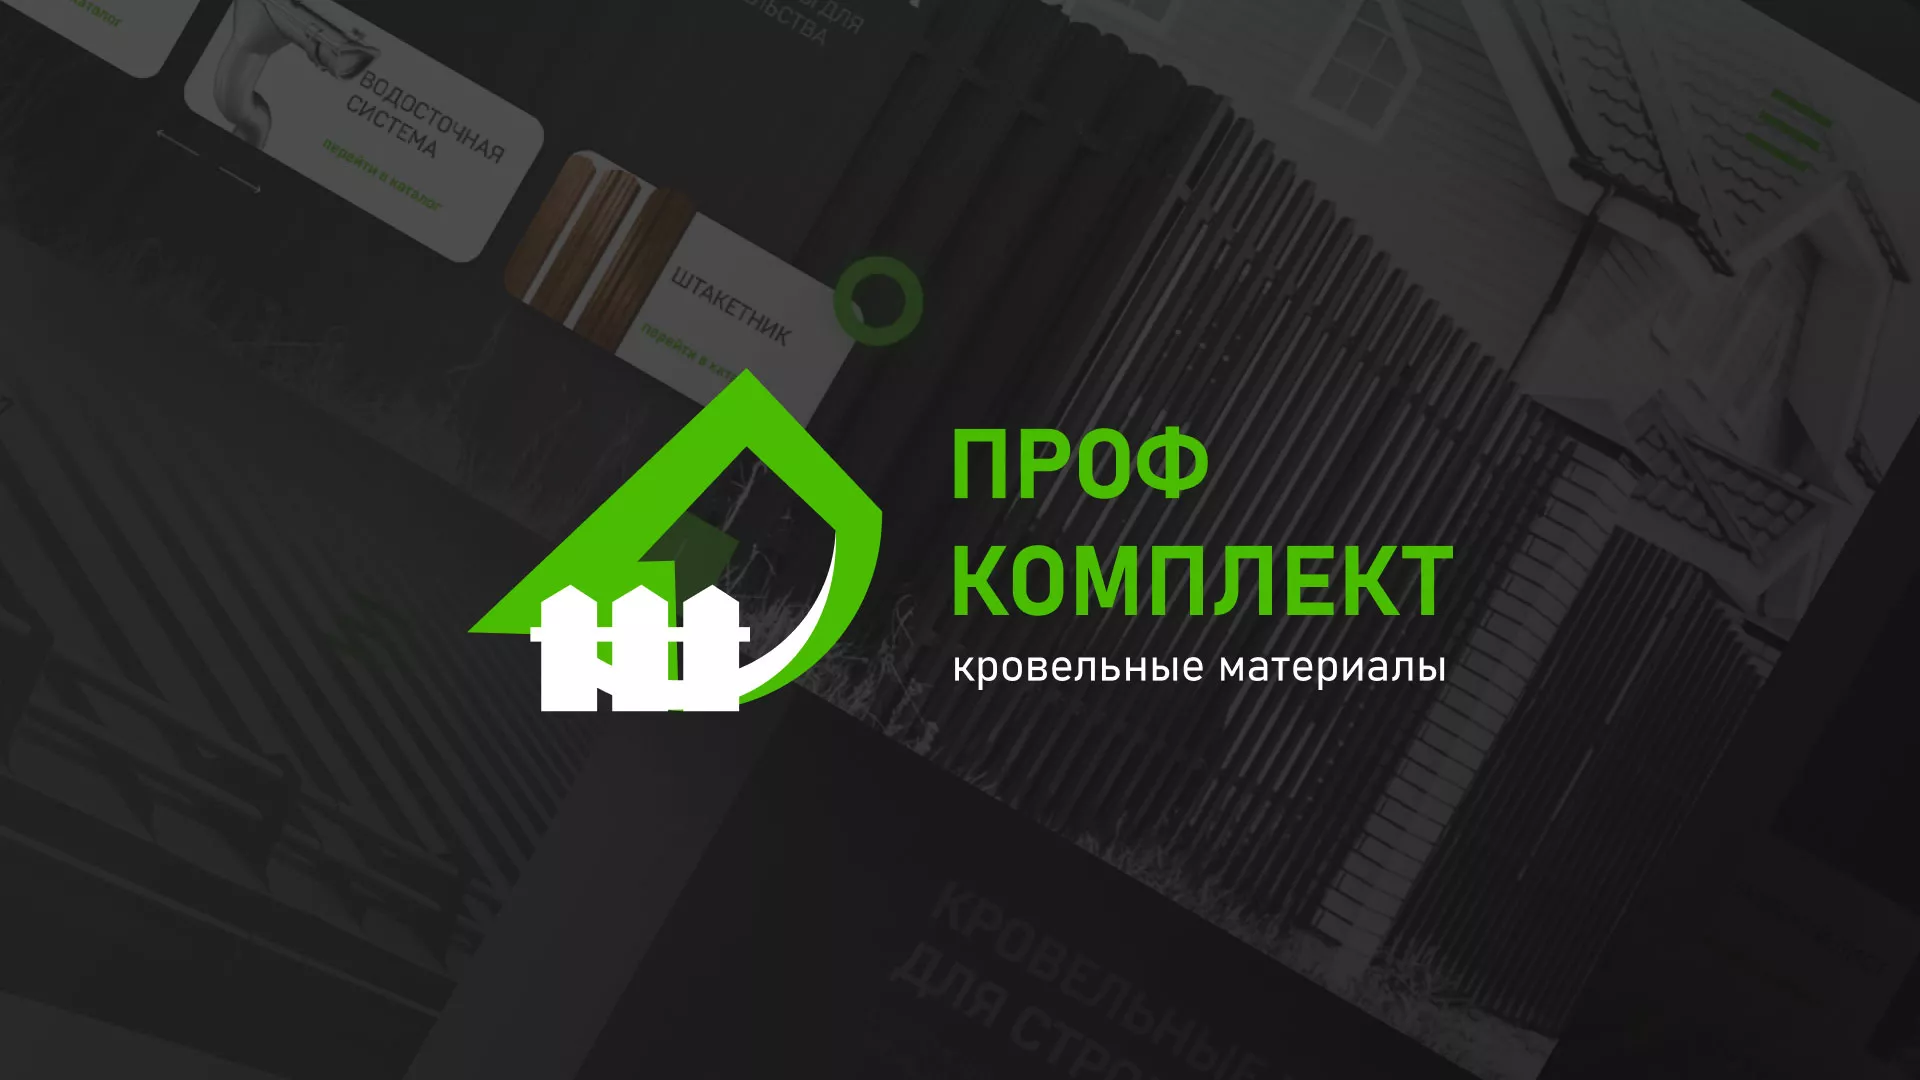 Создание сайта компании «Проф Комплект» в Рыльске